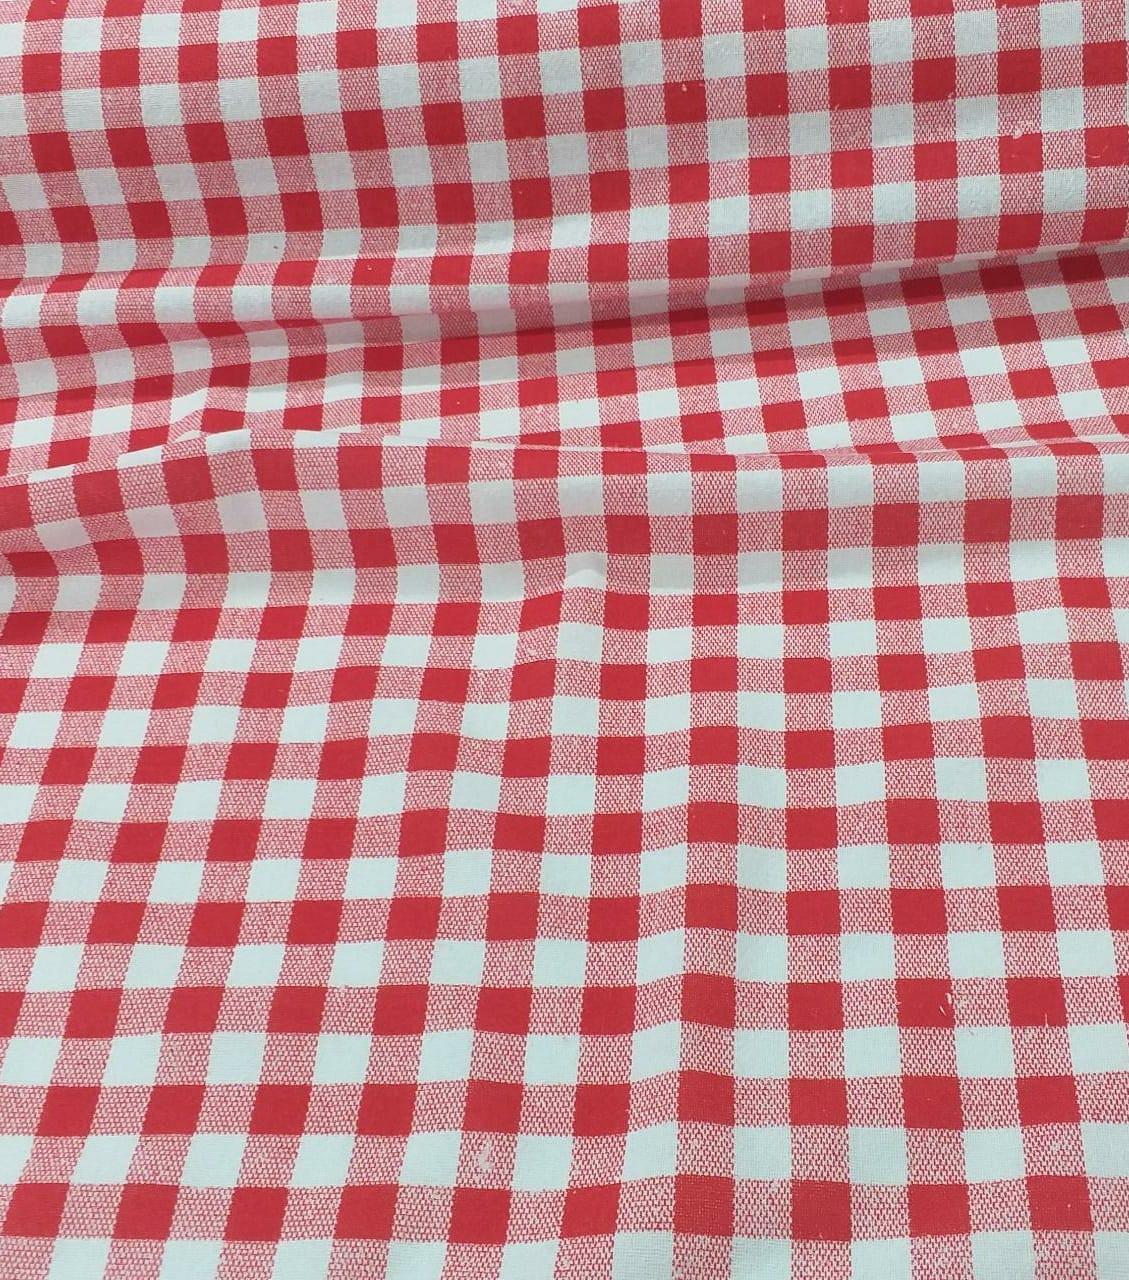 Pano d prato atoalhado bordado no tecido xadrez com bico em crochê.